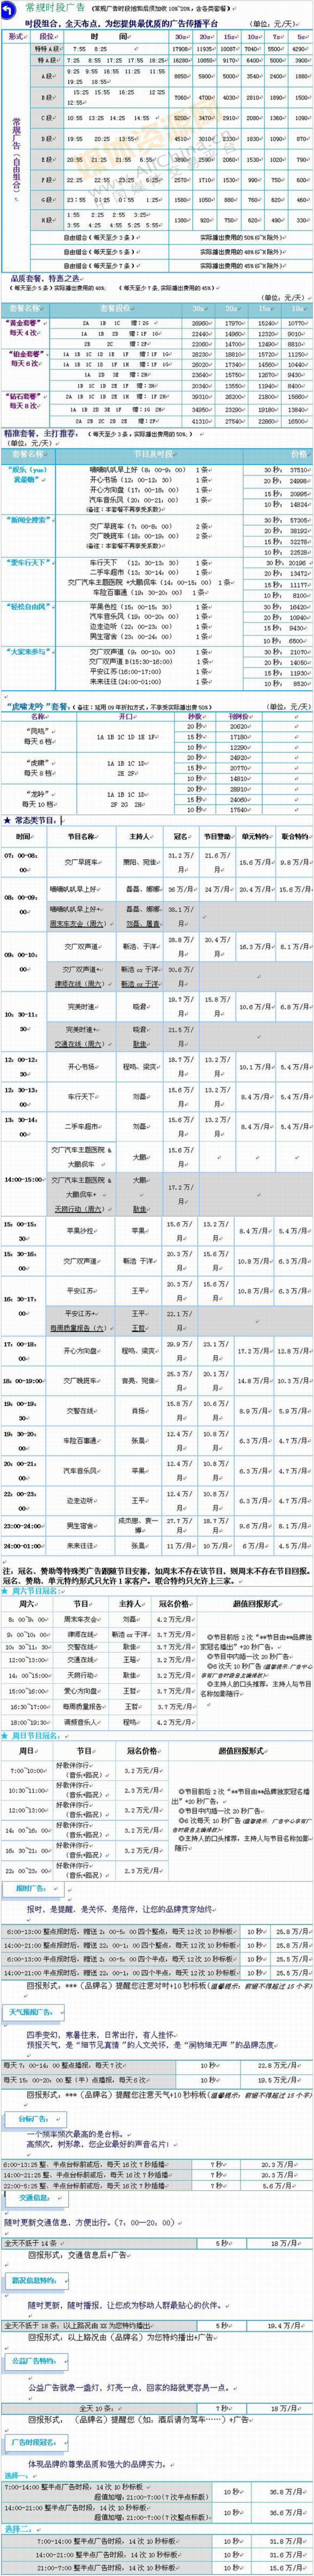 2010江苏人民广播电台交通台-FM101.1广告报价表.jpg